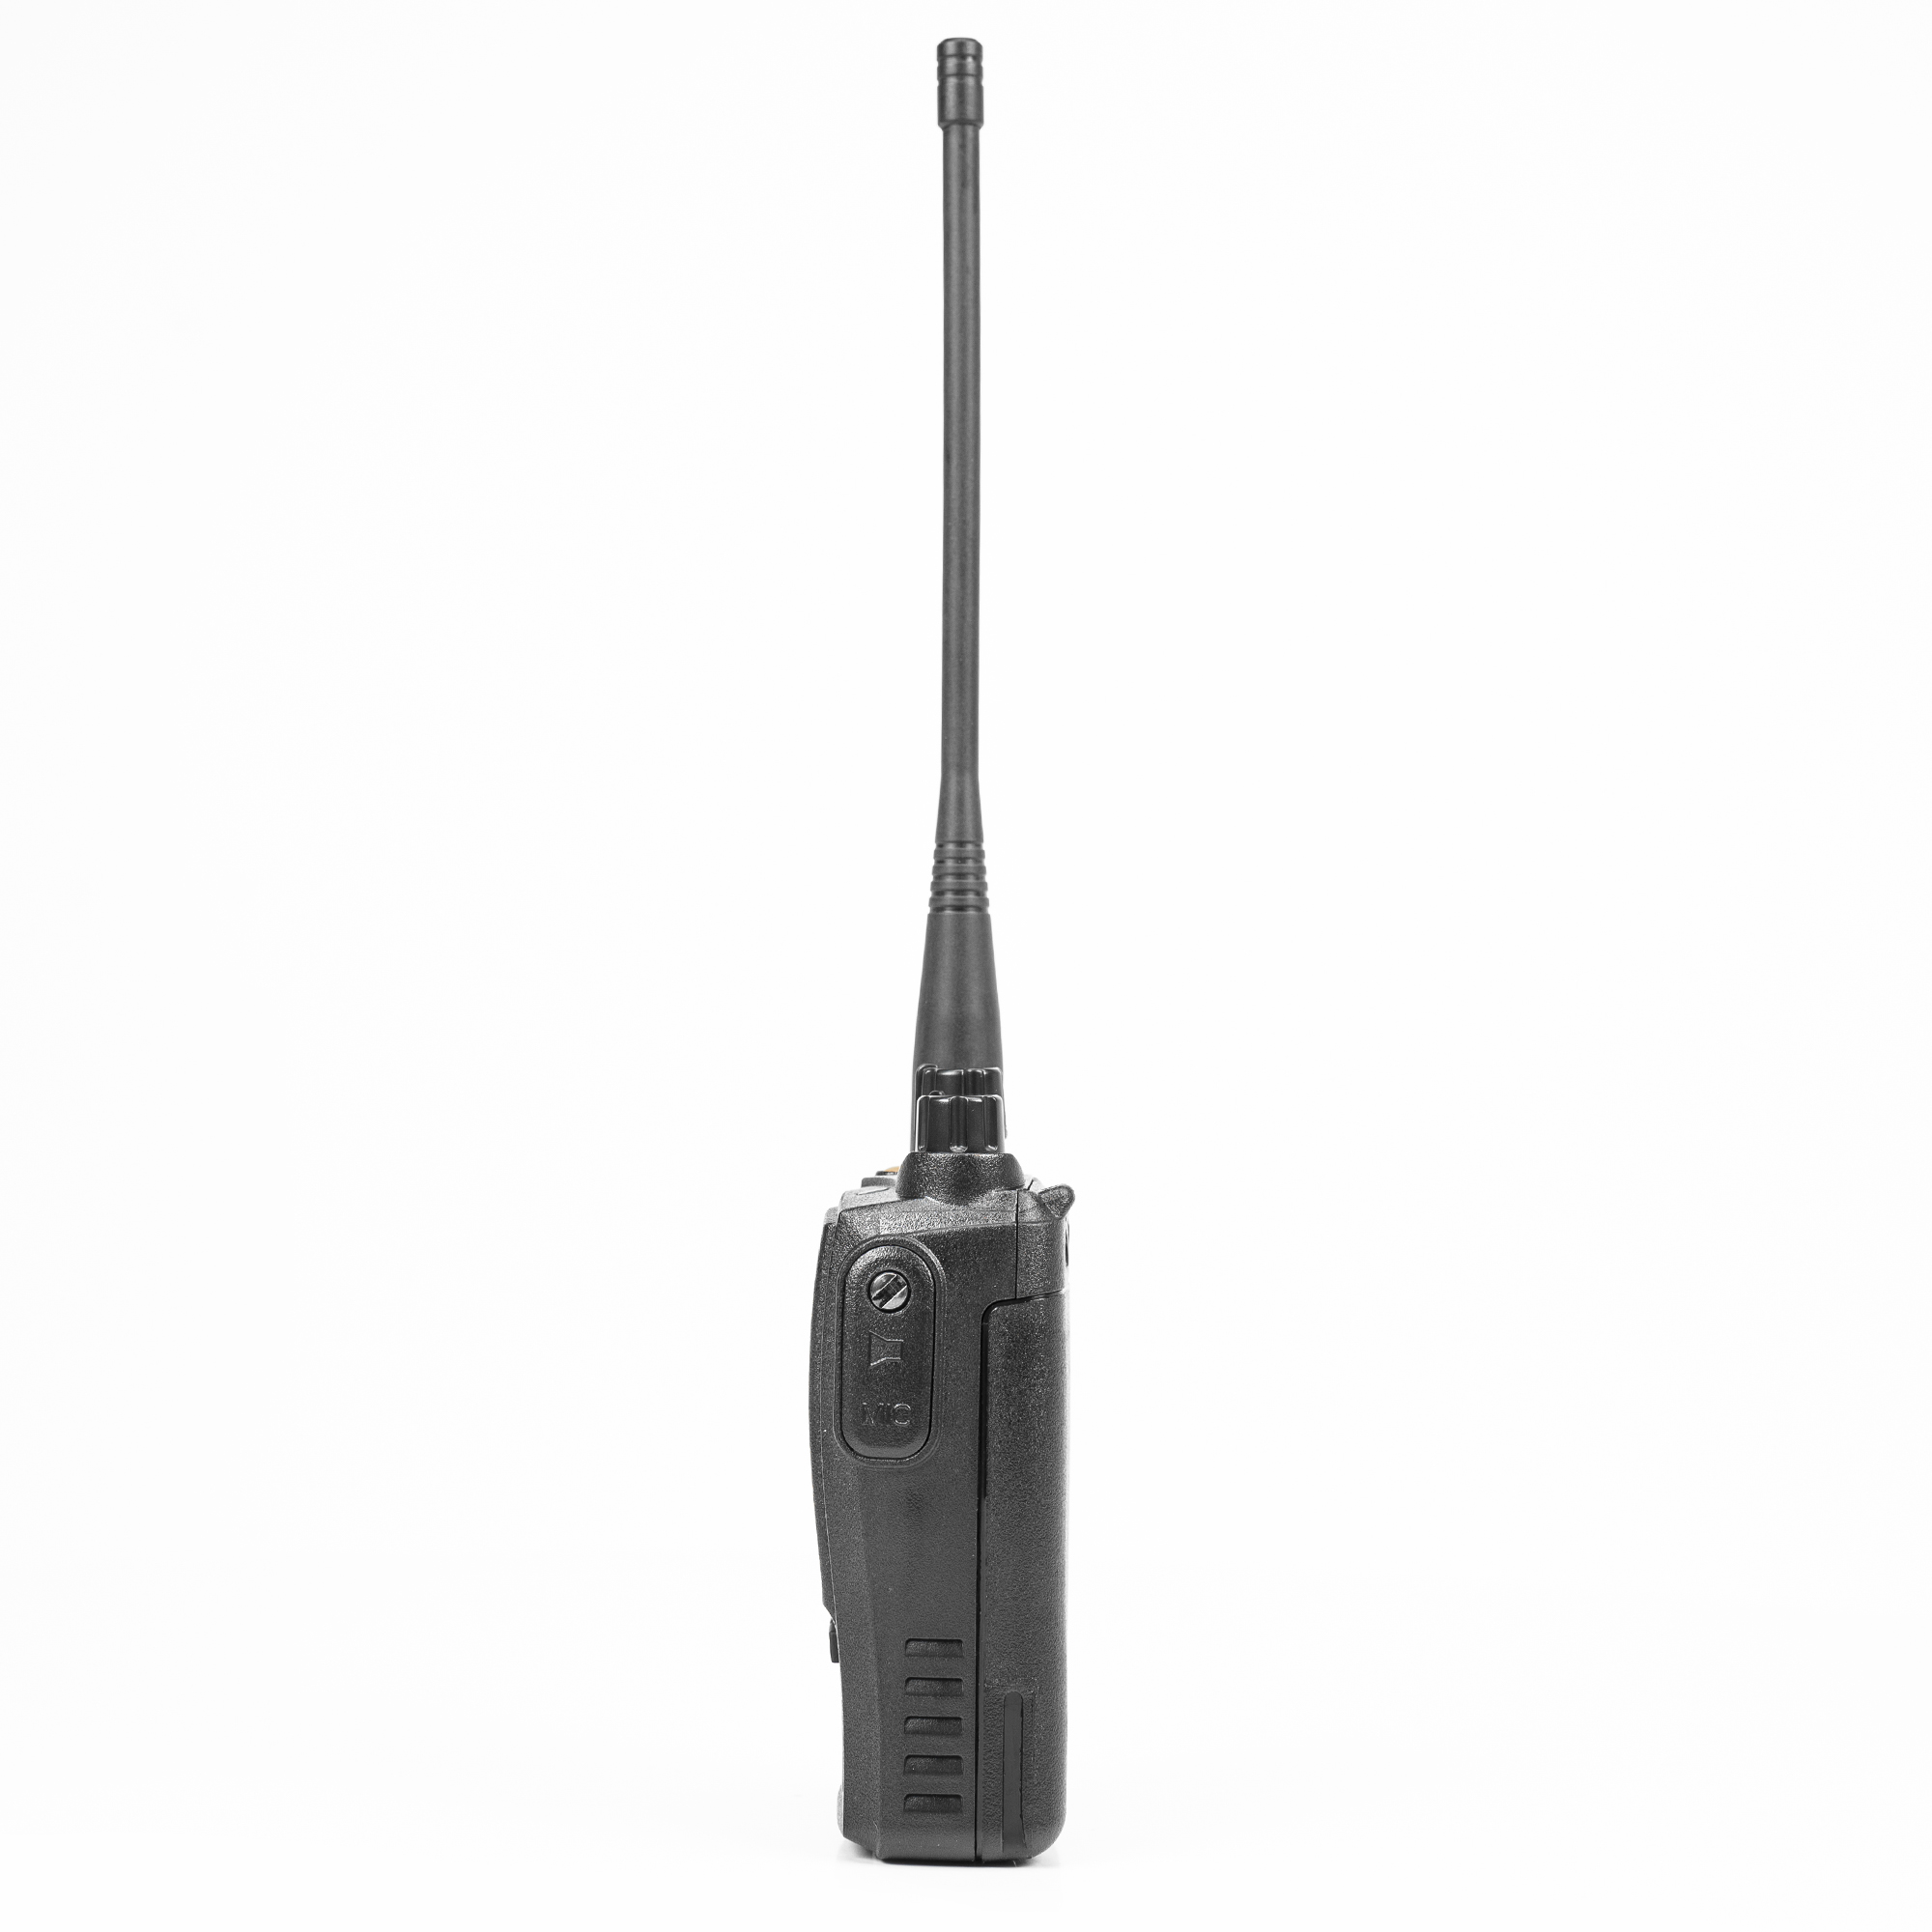 Statie radio portabila VHF PNI Dynascan V-600, 136-174 MHz, IP67, Scan, Scrambler, VOX image3